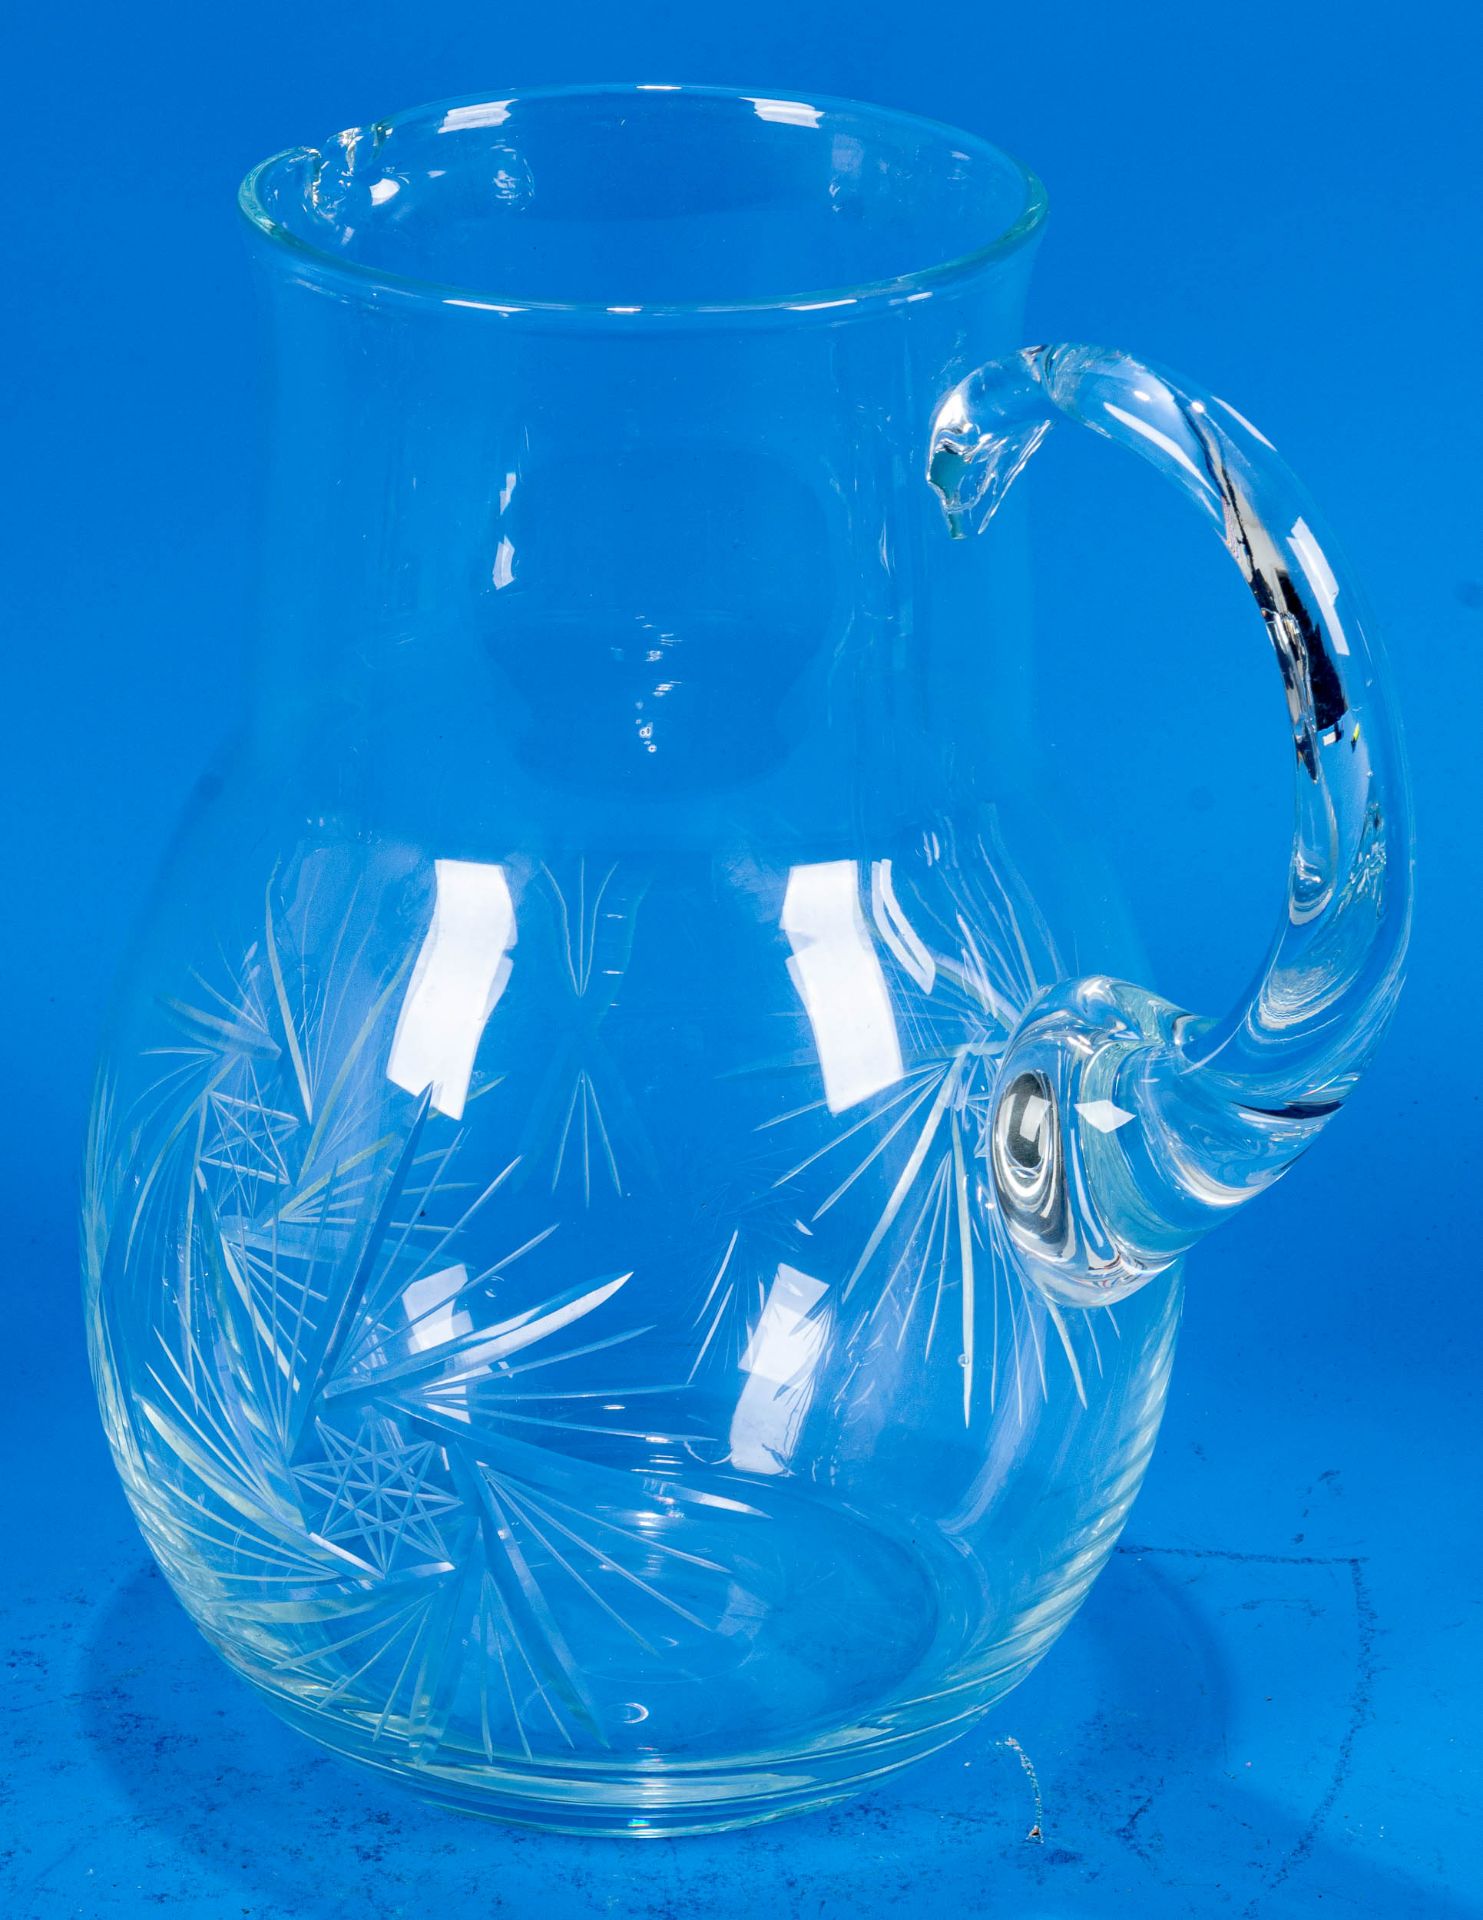 3teiliges Konvolut versch. Saftkrüge/Wasserkrüge. Farblose Glaskörper mit seitlichem Griff, teilwei - Image 4 of 9